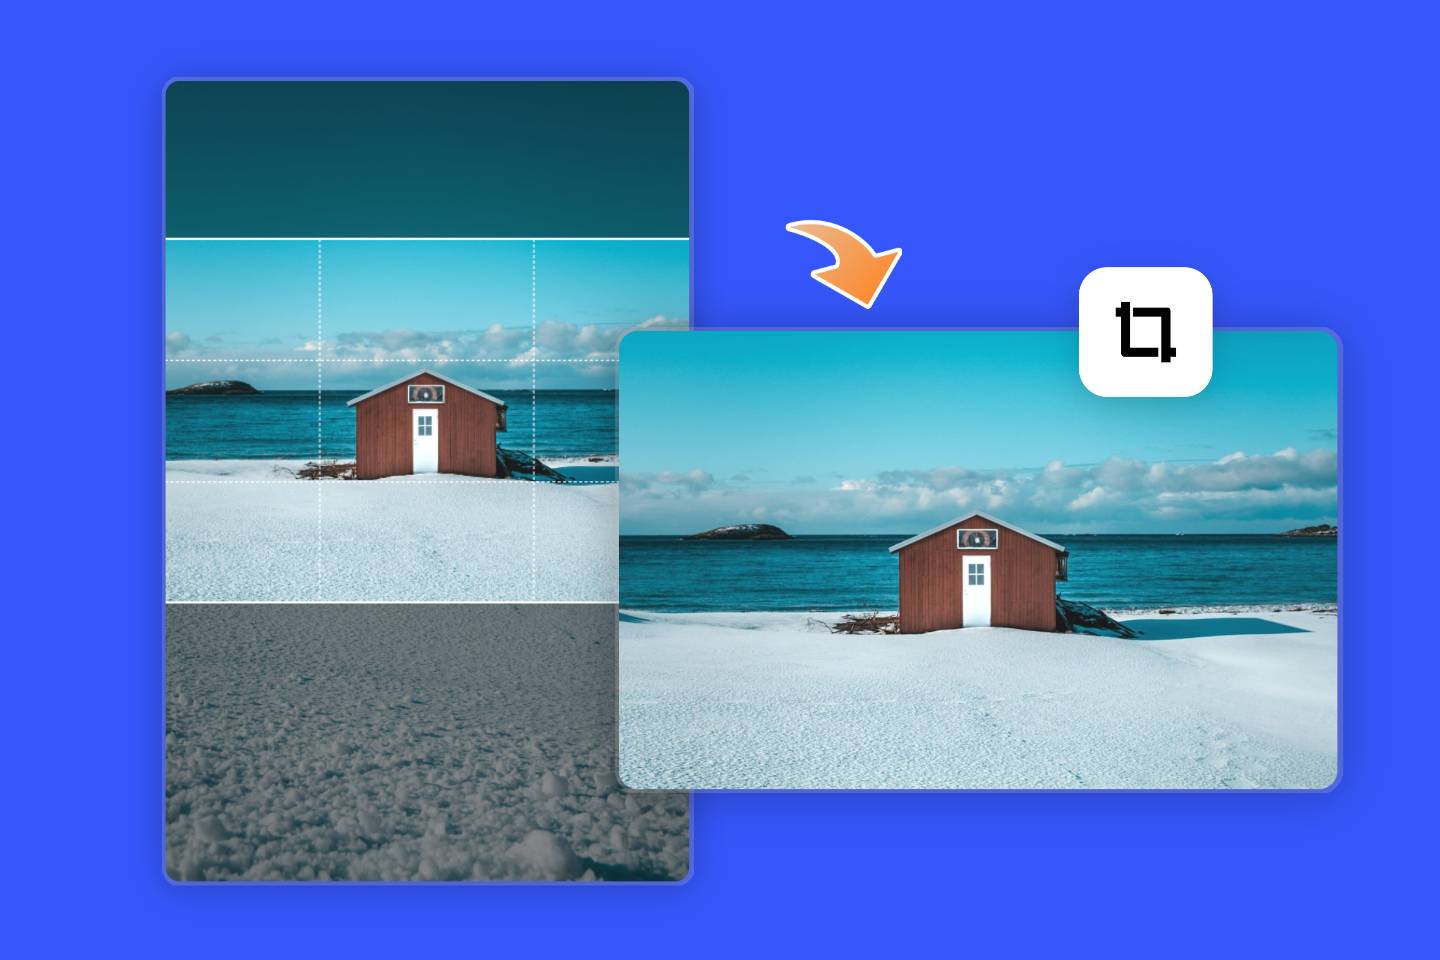 Convert a sea side cottage image in portrait orientation into landscape orientation